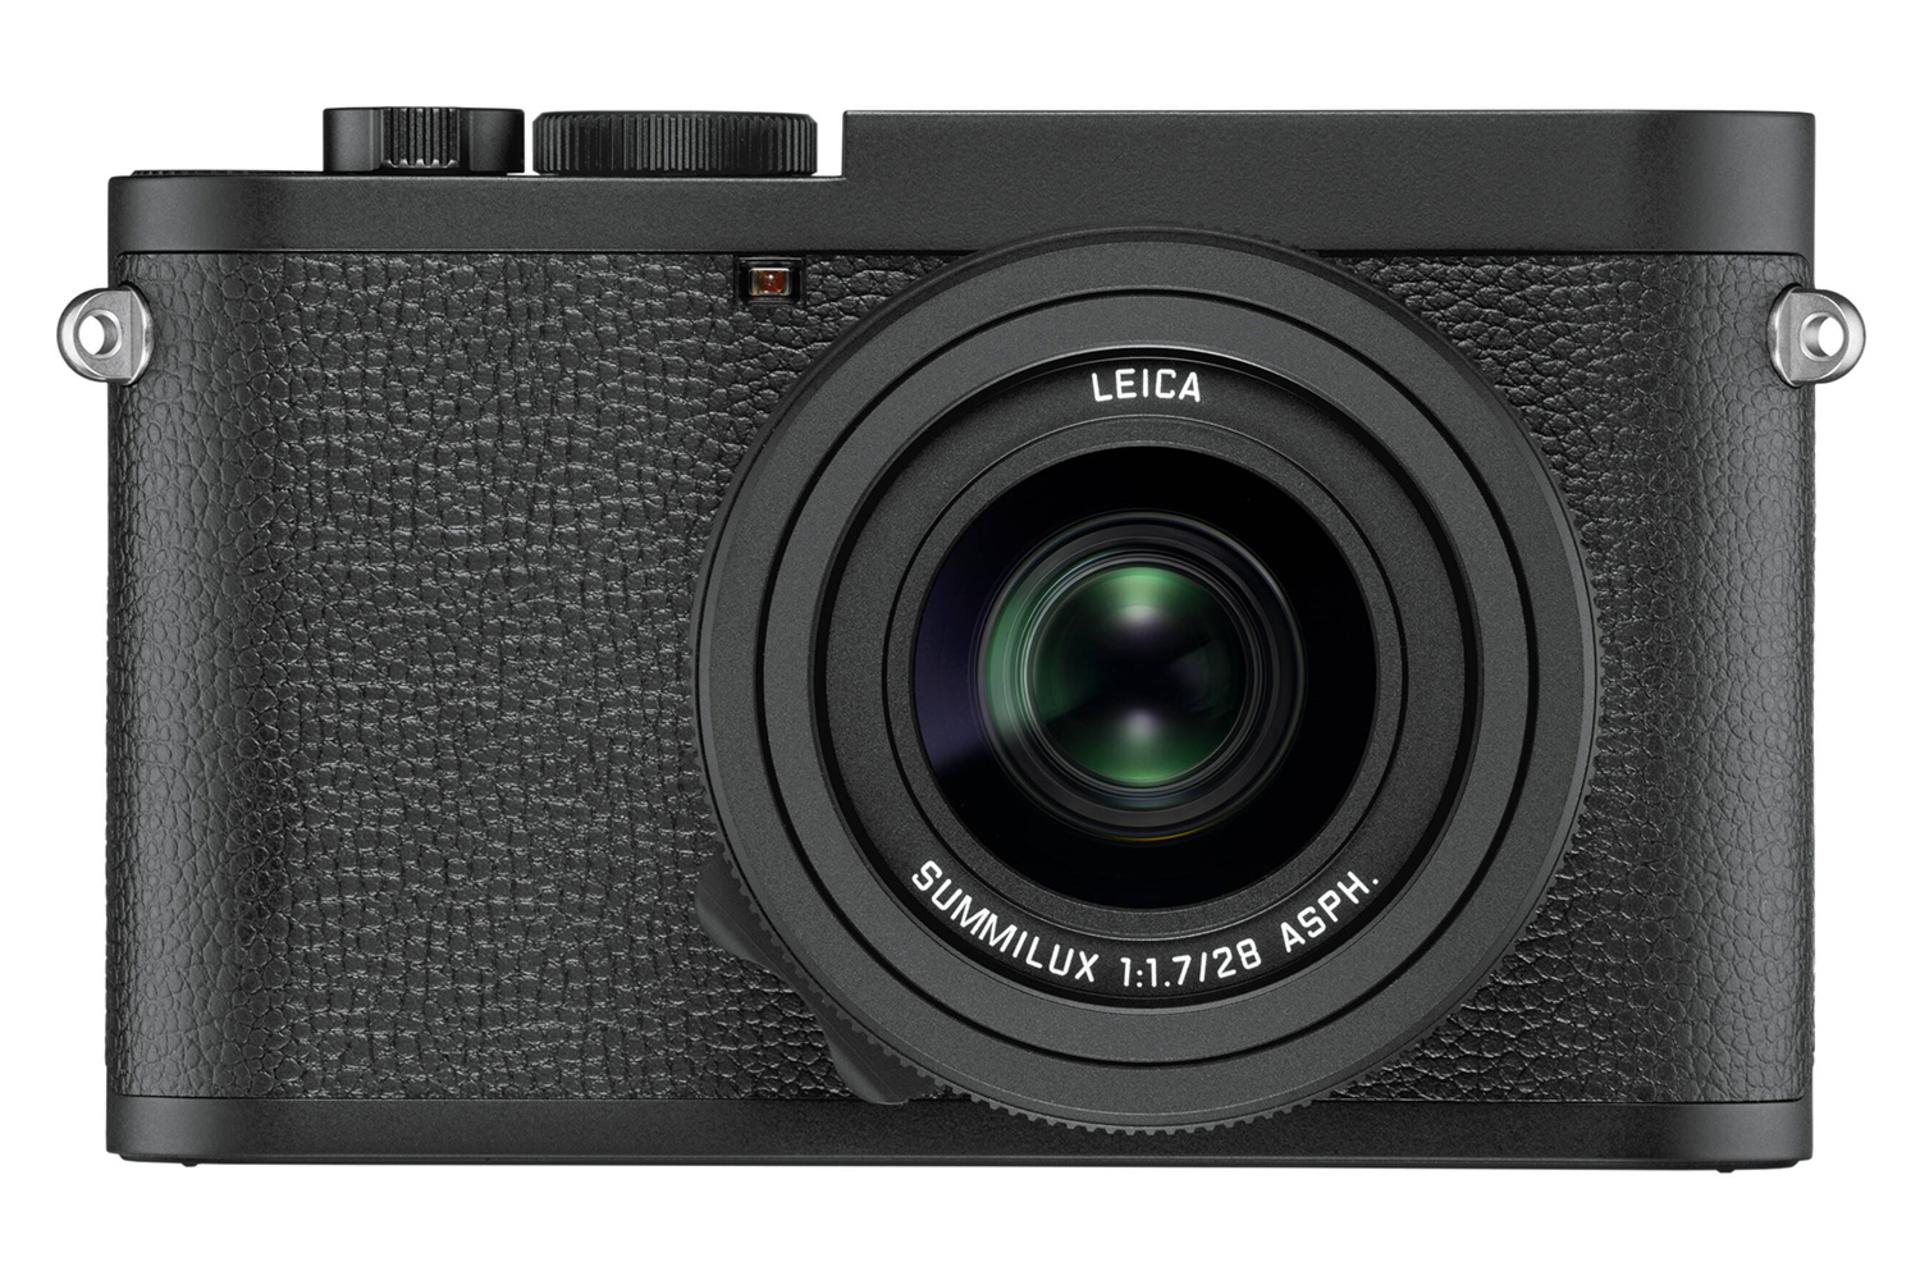 نمای جلو دوبین لایکا Q2 مونوکروم / Leica Q2